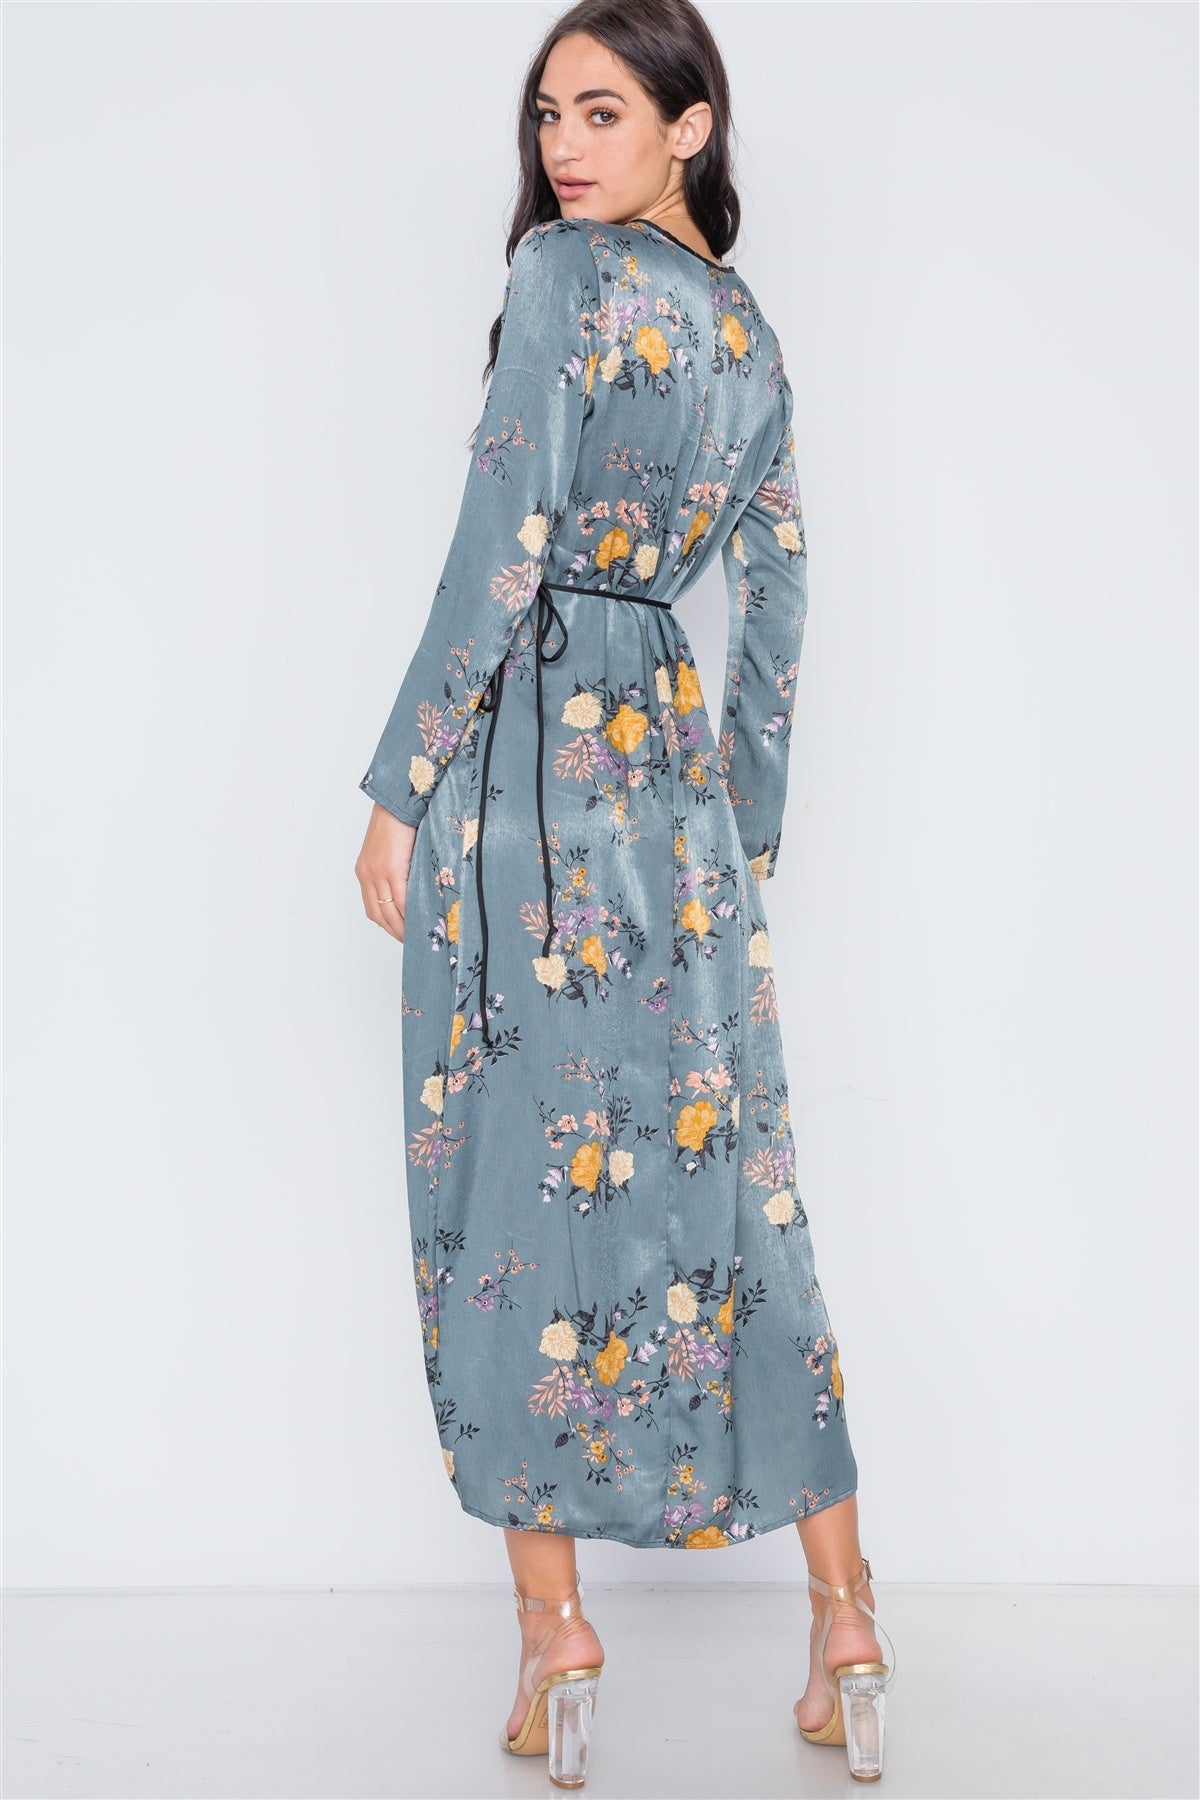 Storm Blue Side Slit Floral Wrap Maxi Dress